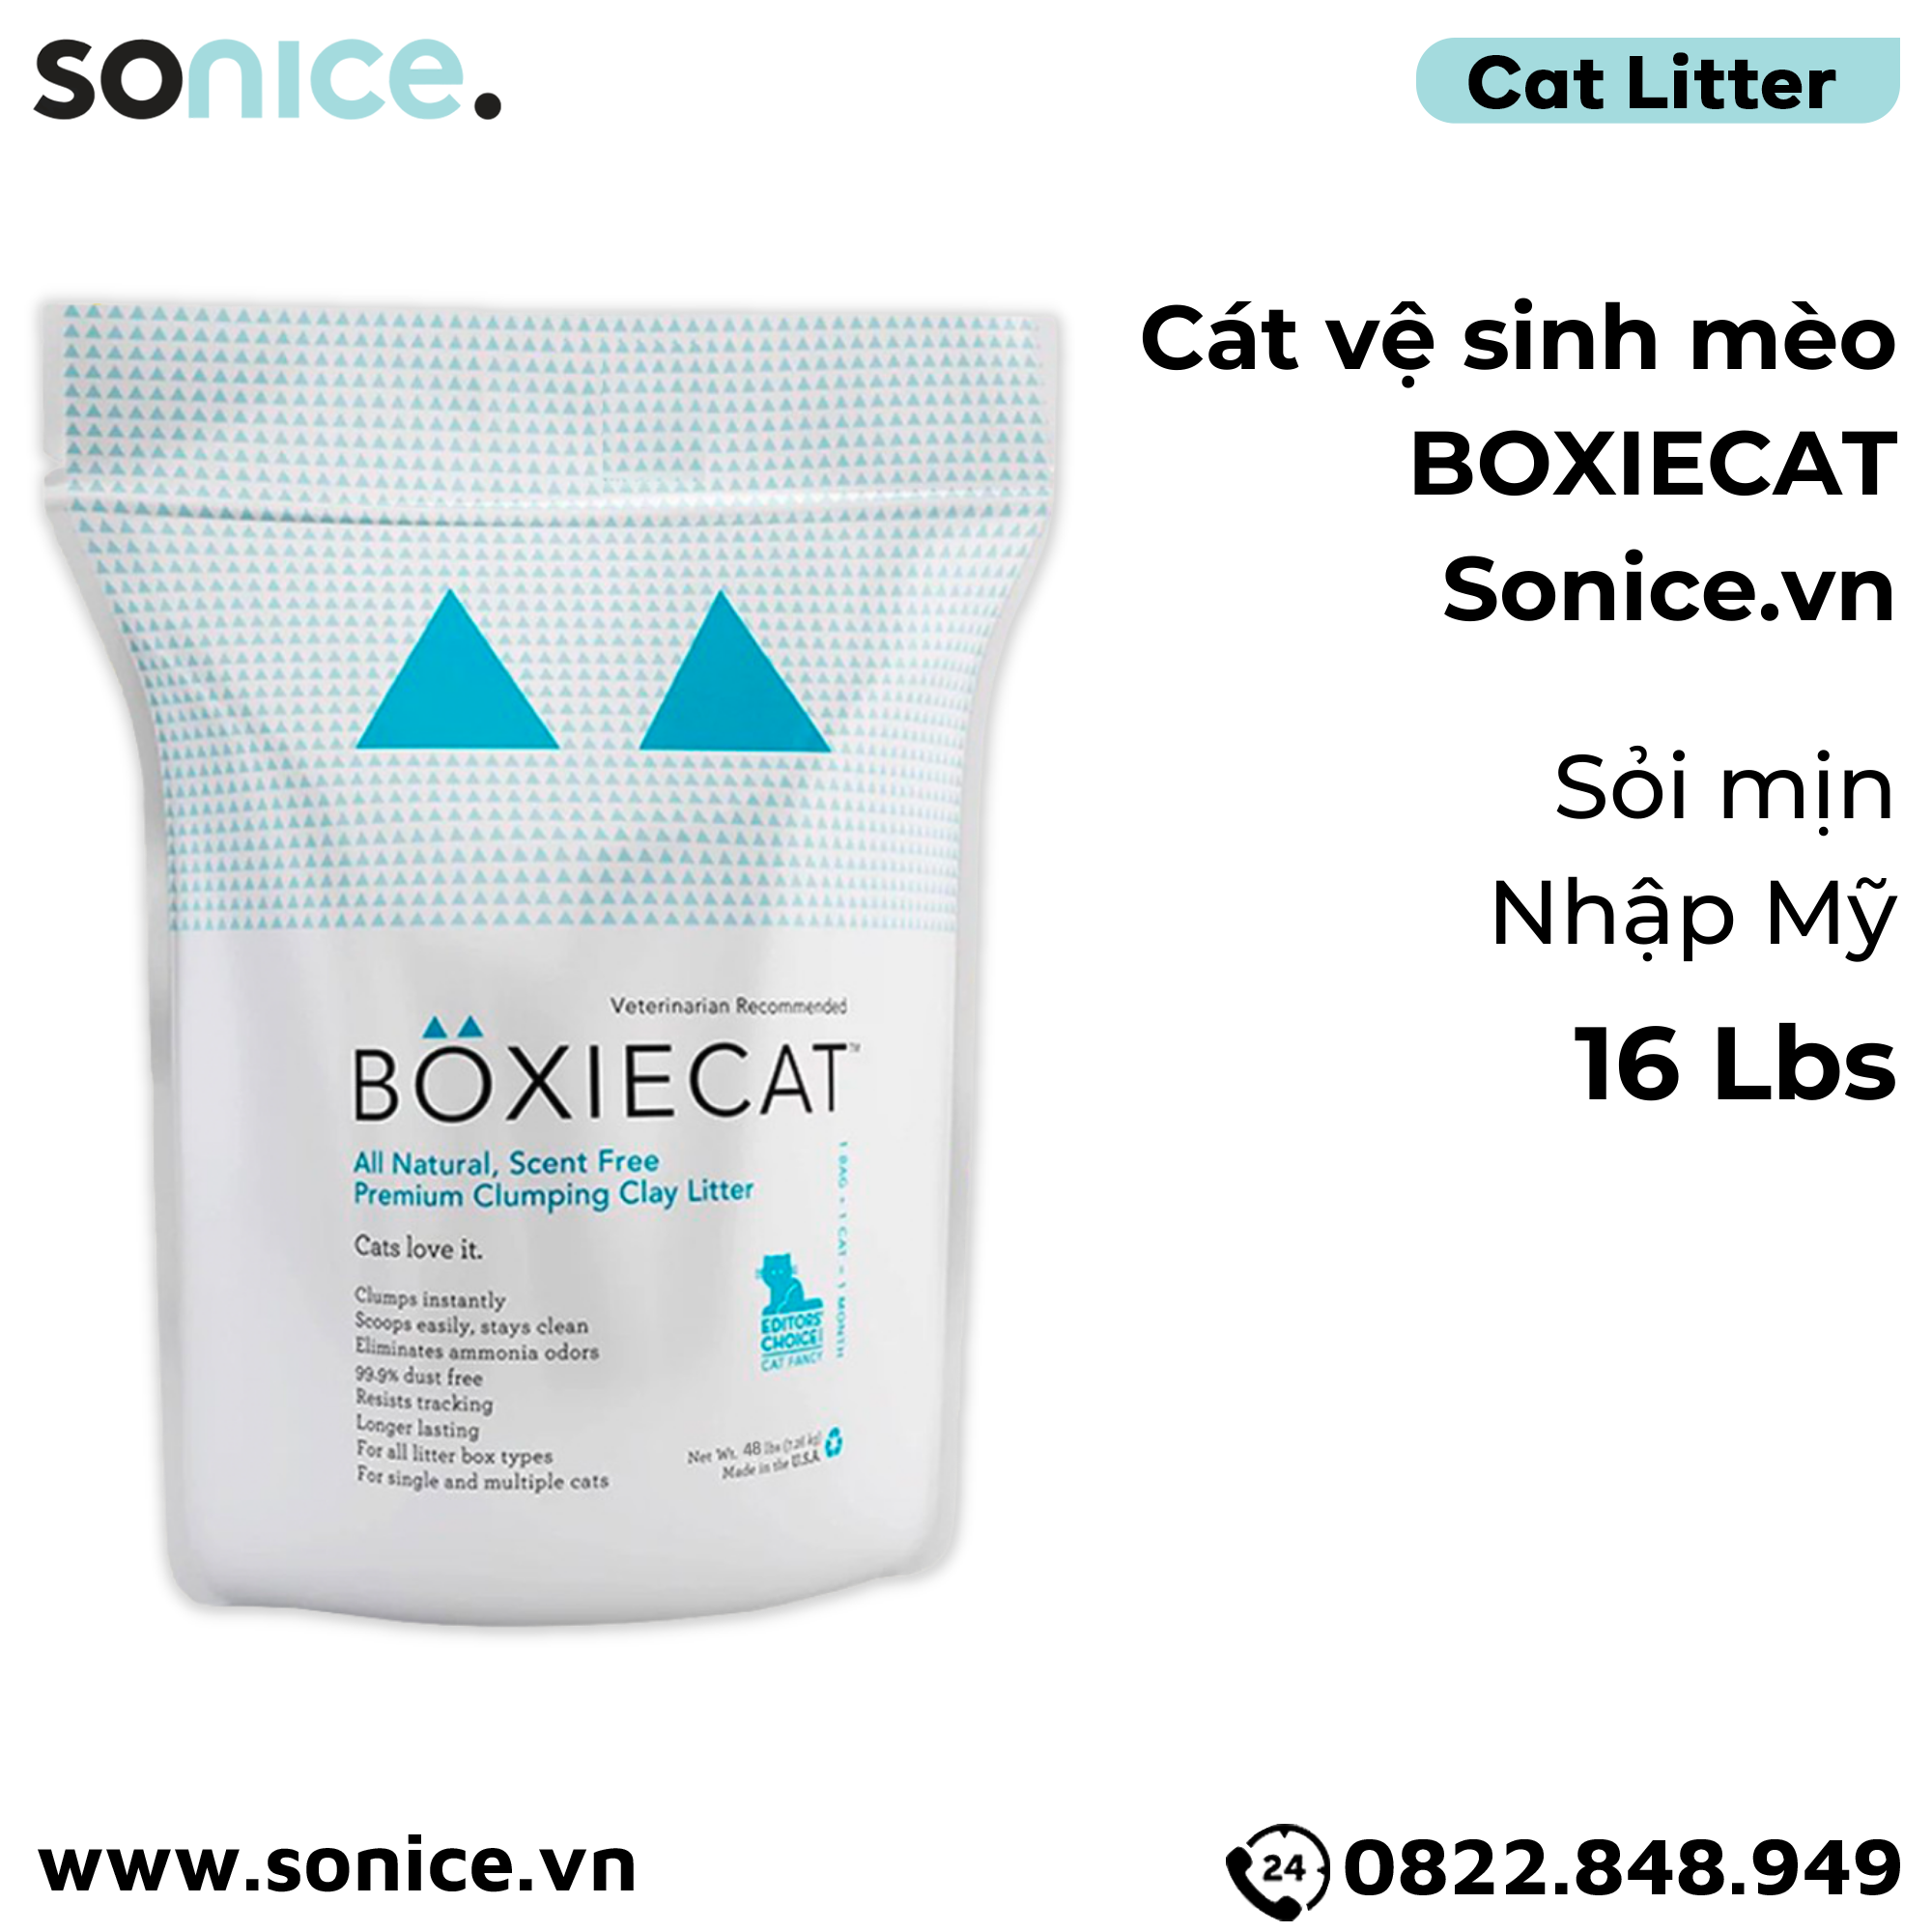  Cát vệ sinh cho mèo BOXIECAT 16Lbs - Sỏi mịn nhập Mỹ SONICE. 